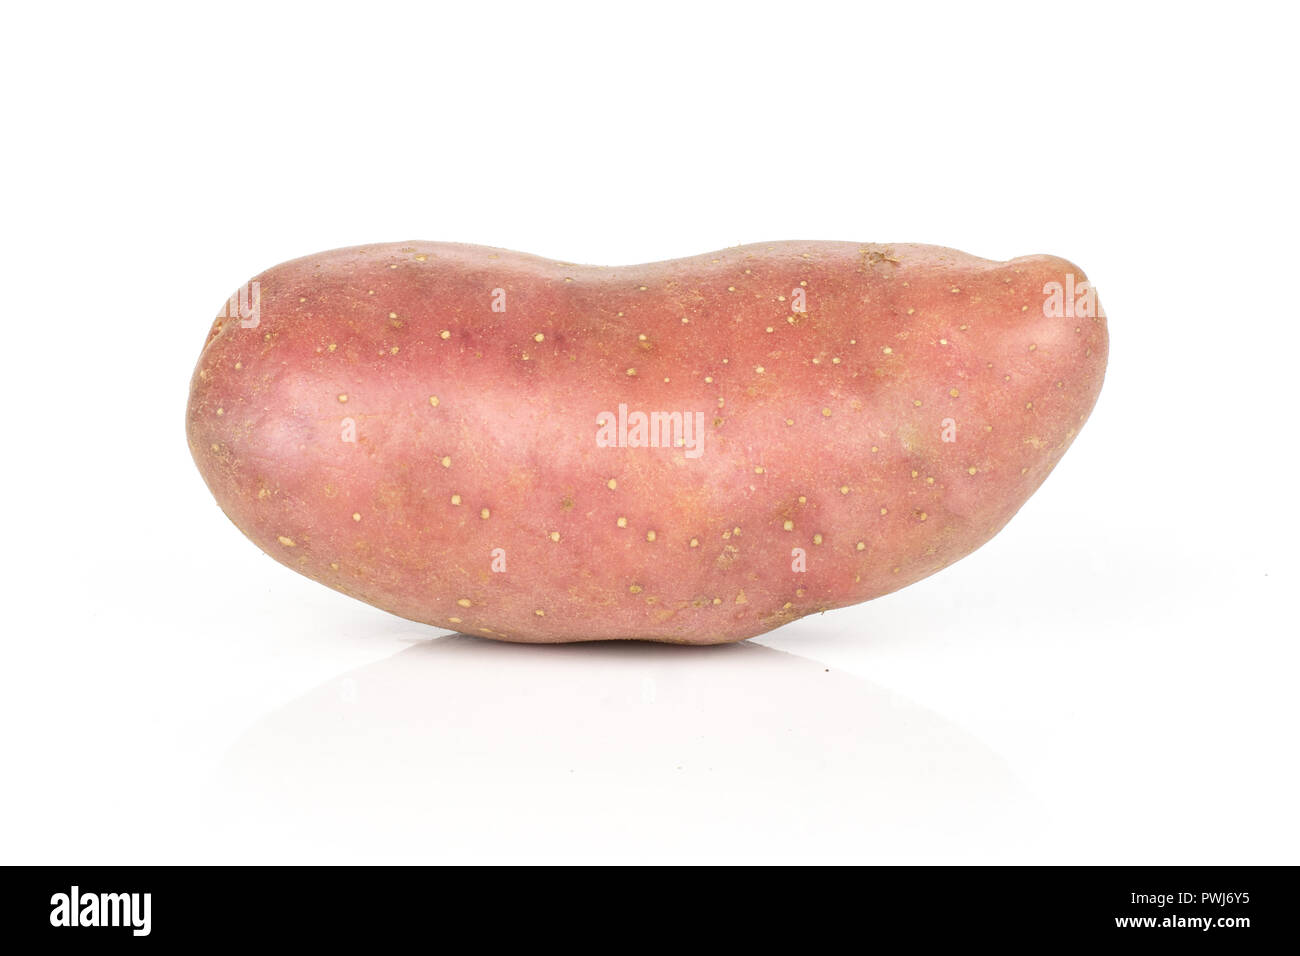 Un intero fresco patata rossa francelina varietà isolati su sfondo bianco Foto Stock